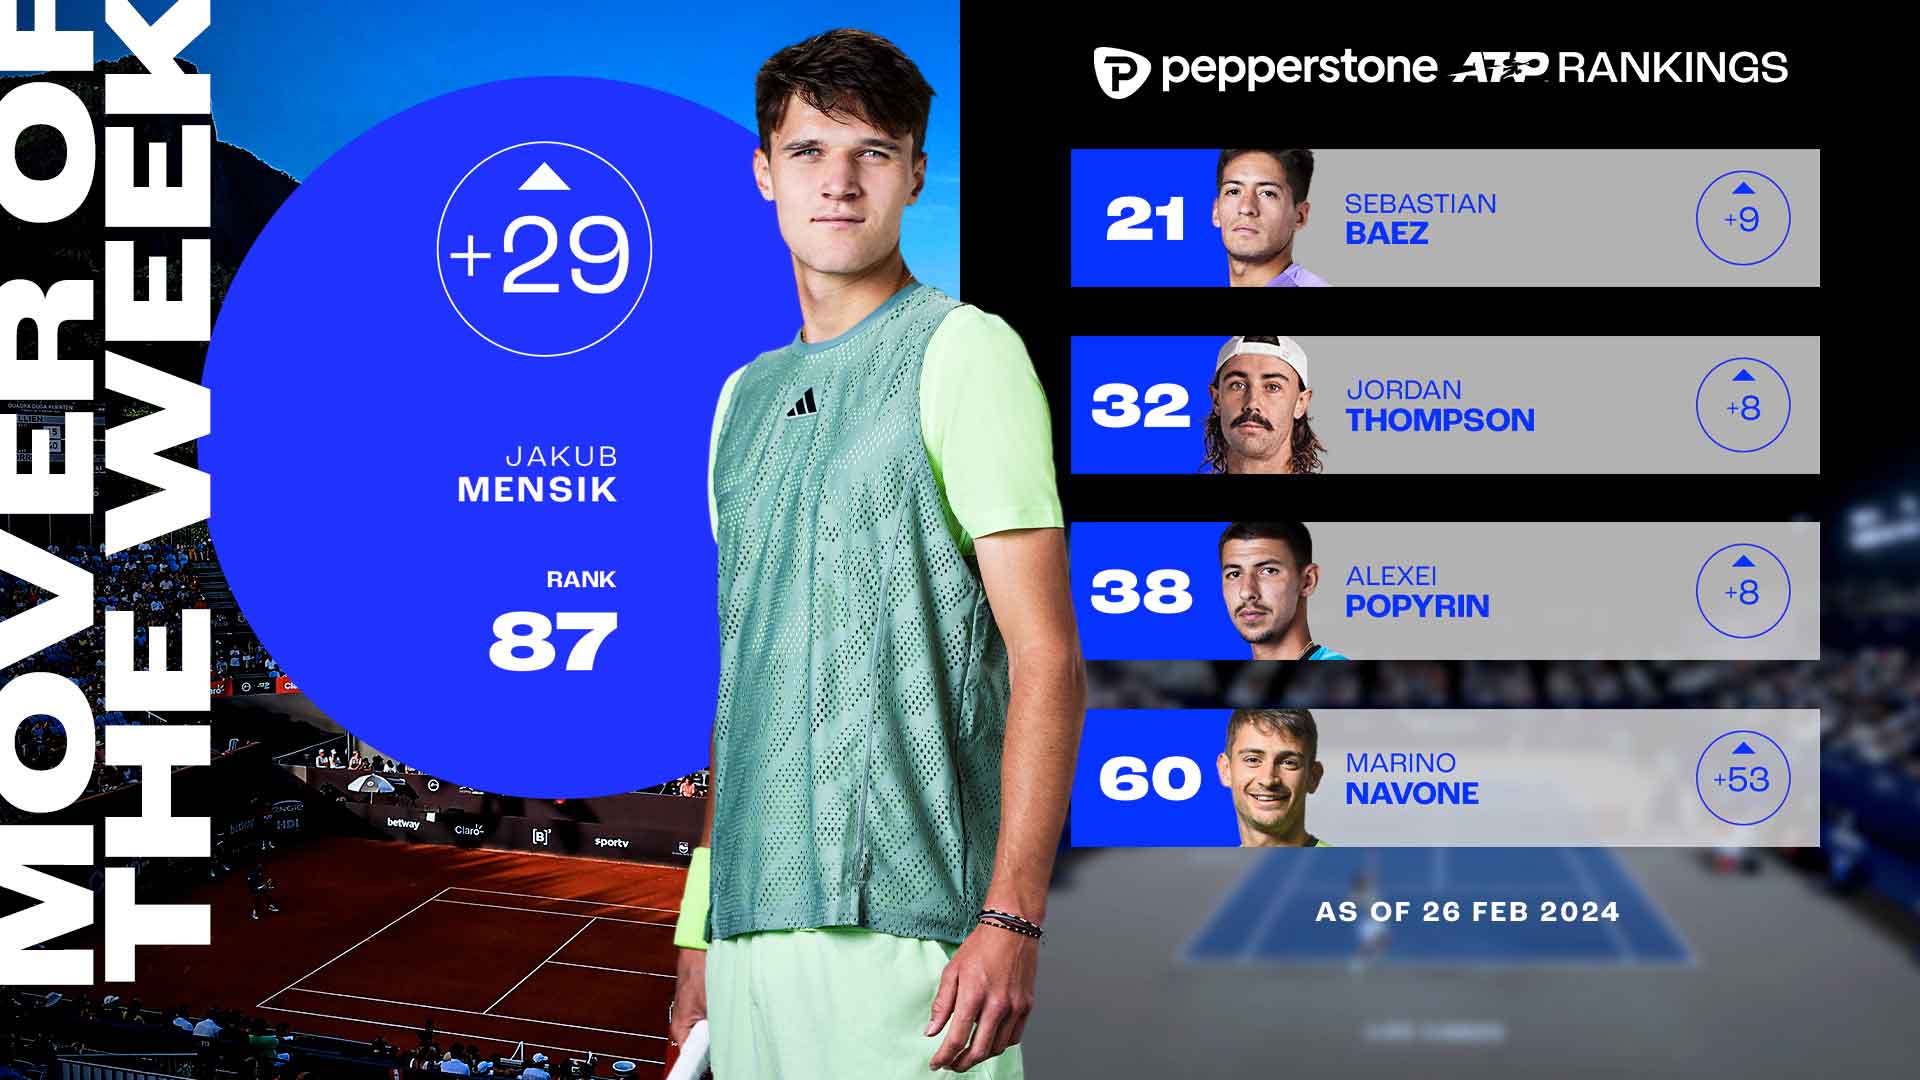 Jakub Mensik debuta en el Top 100 del Pepperstone ATP Rankings tras alcanzar en Doha su primera final ATP Tour.